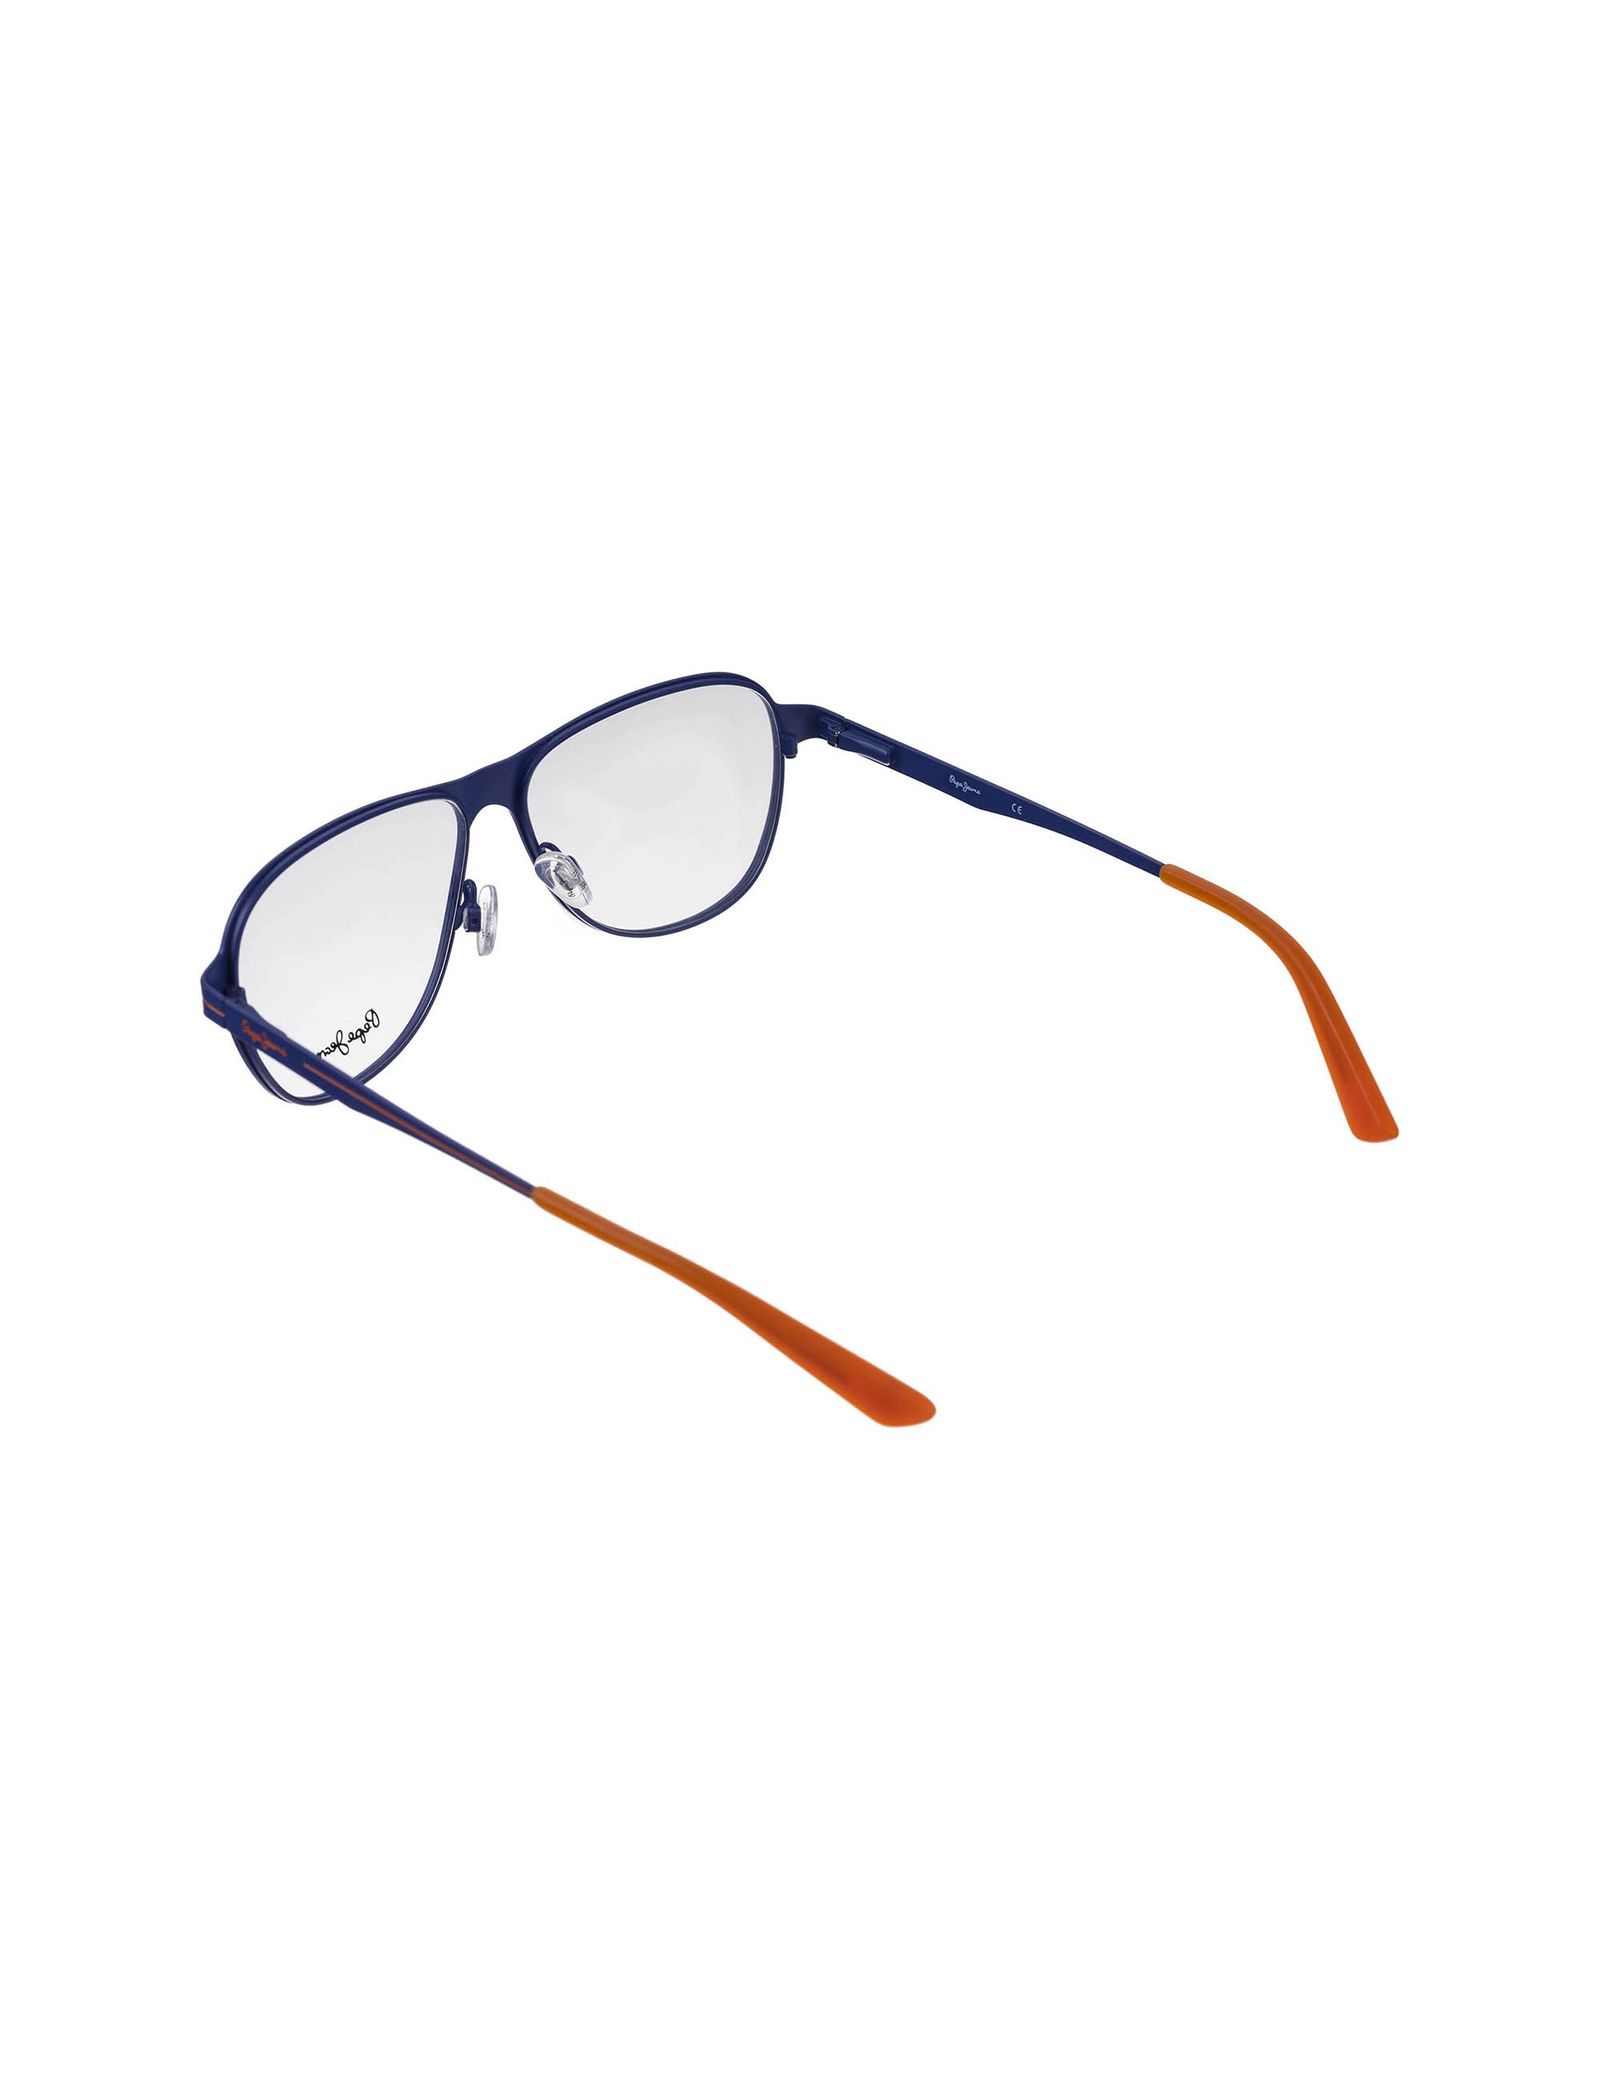 عینک طبی خلبانی مردانه - پپه جینز - آبي  - 4